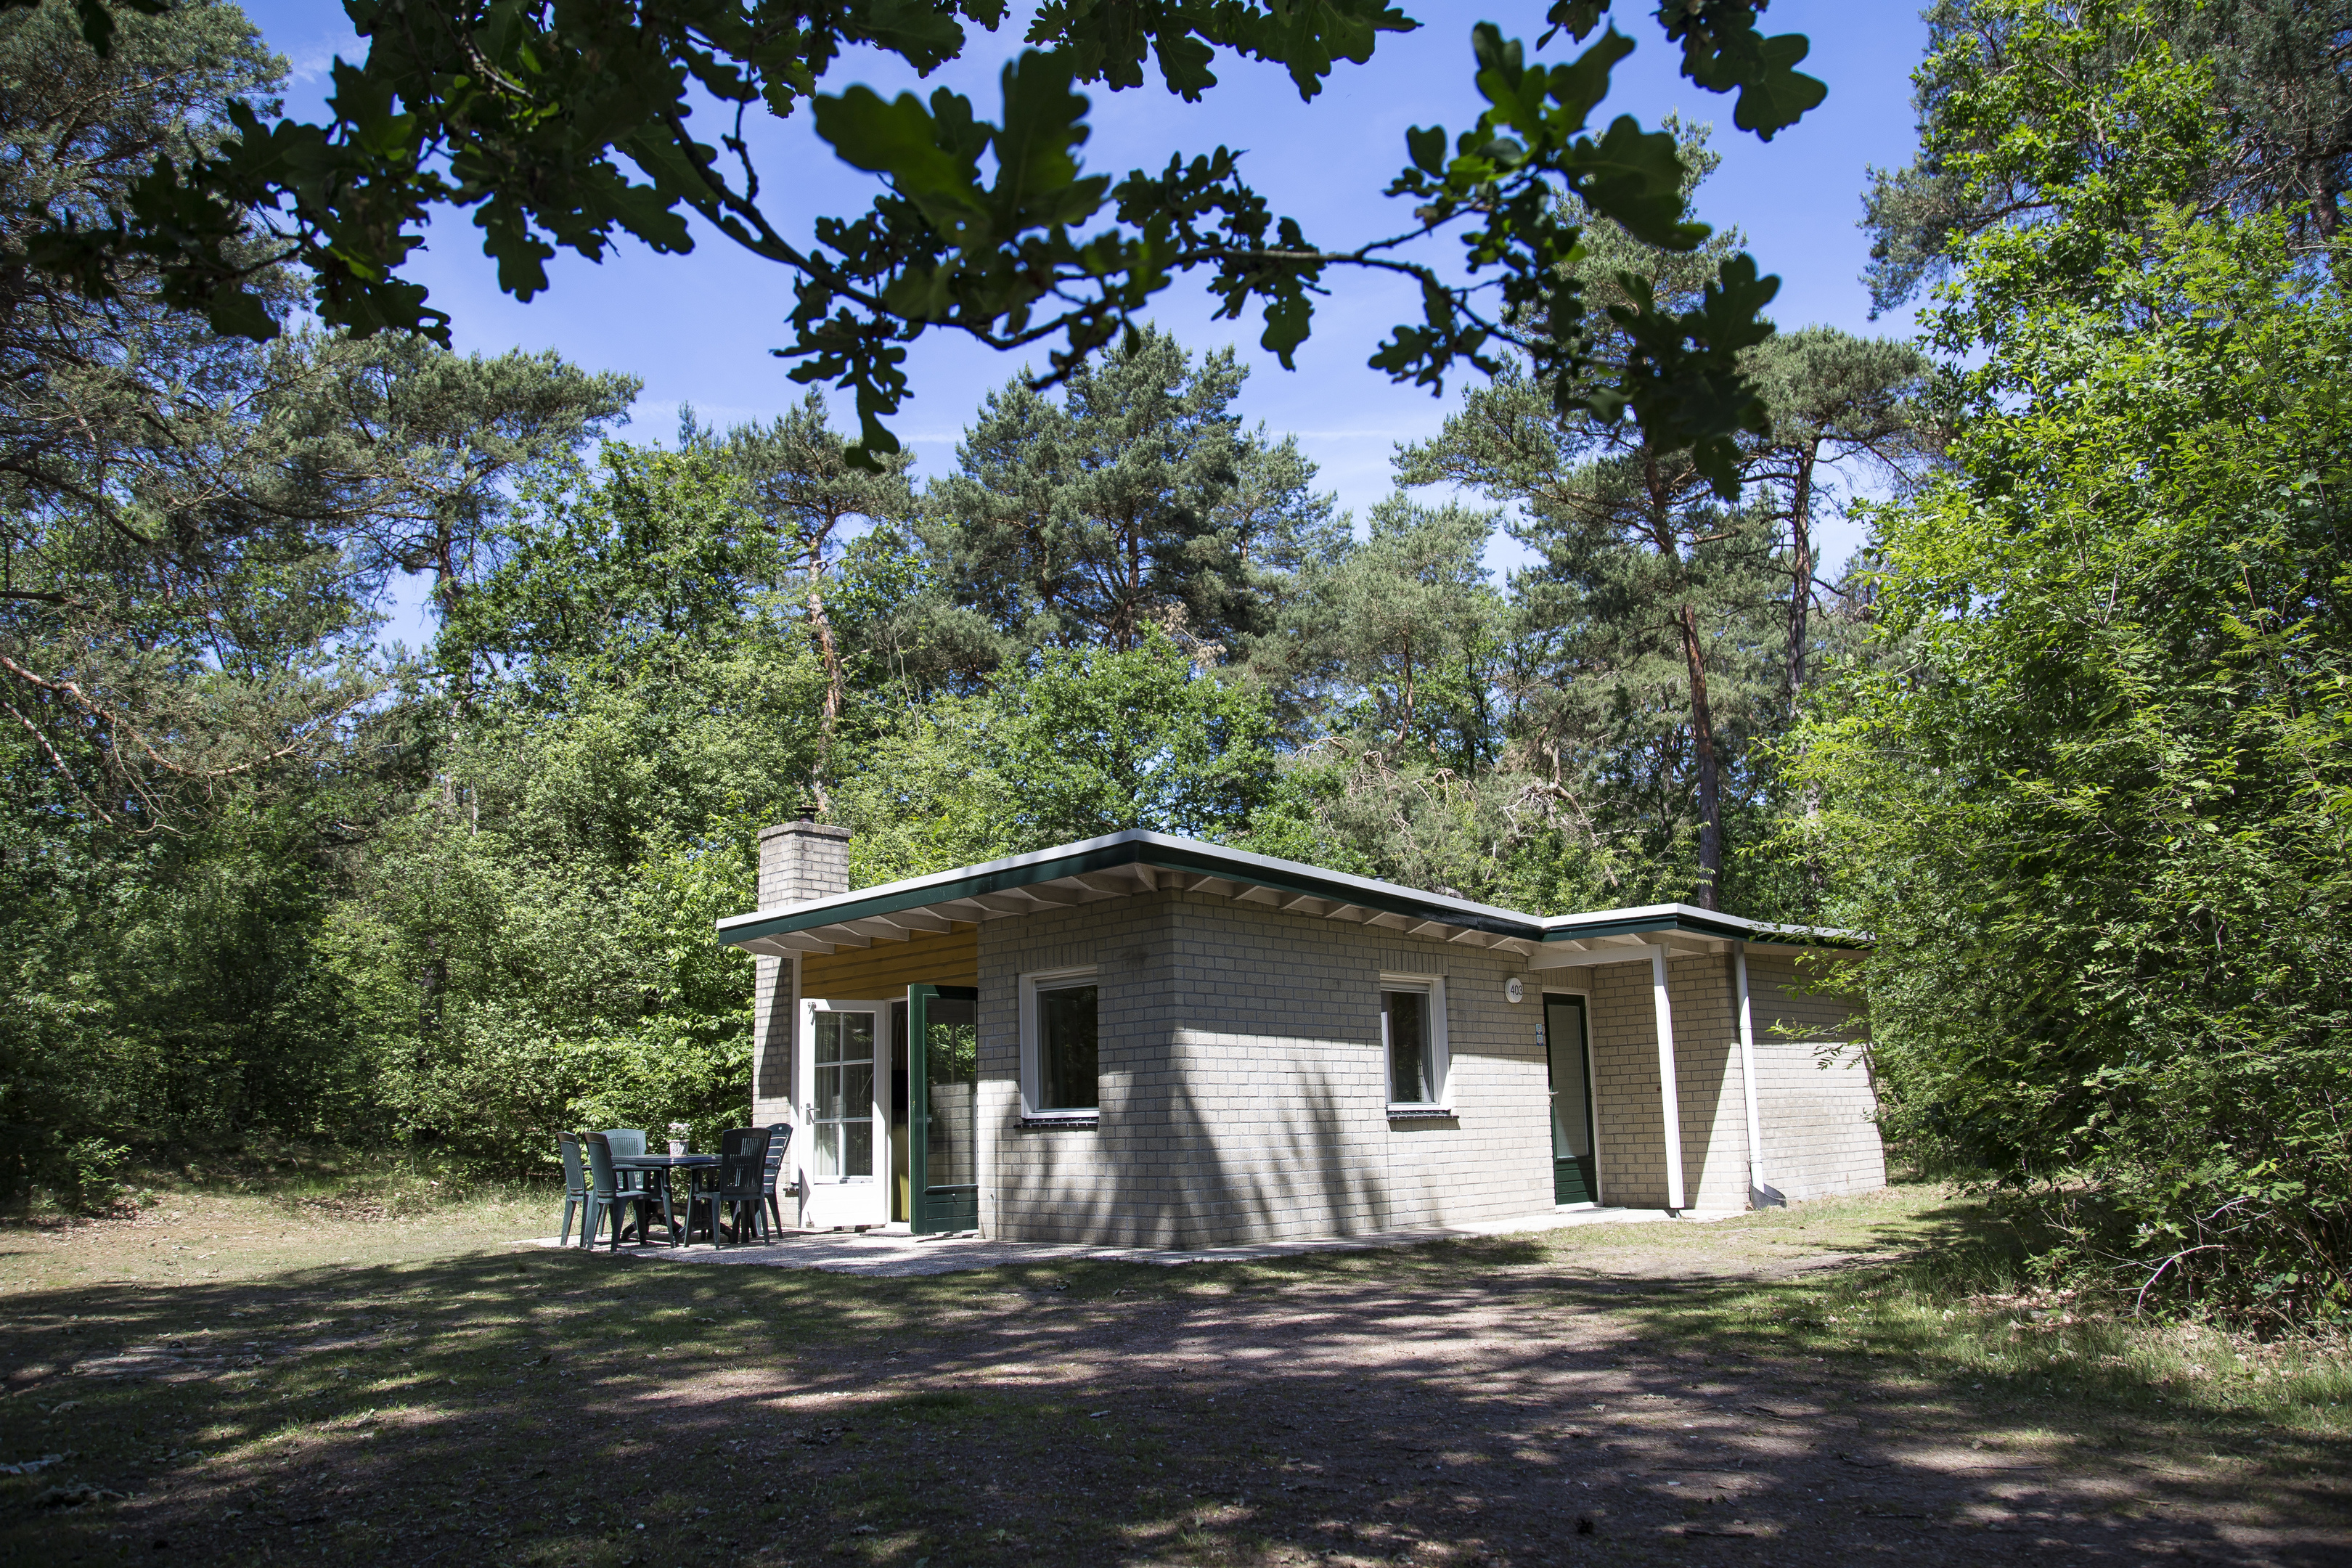 Aangepaste bungalow Meteoor in Dwingeloo - Drenthe, Nederland foto 801135